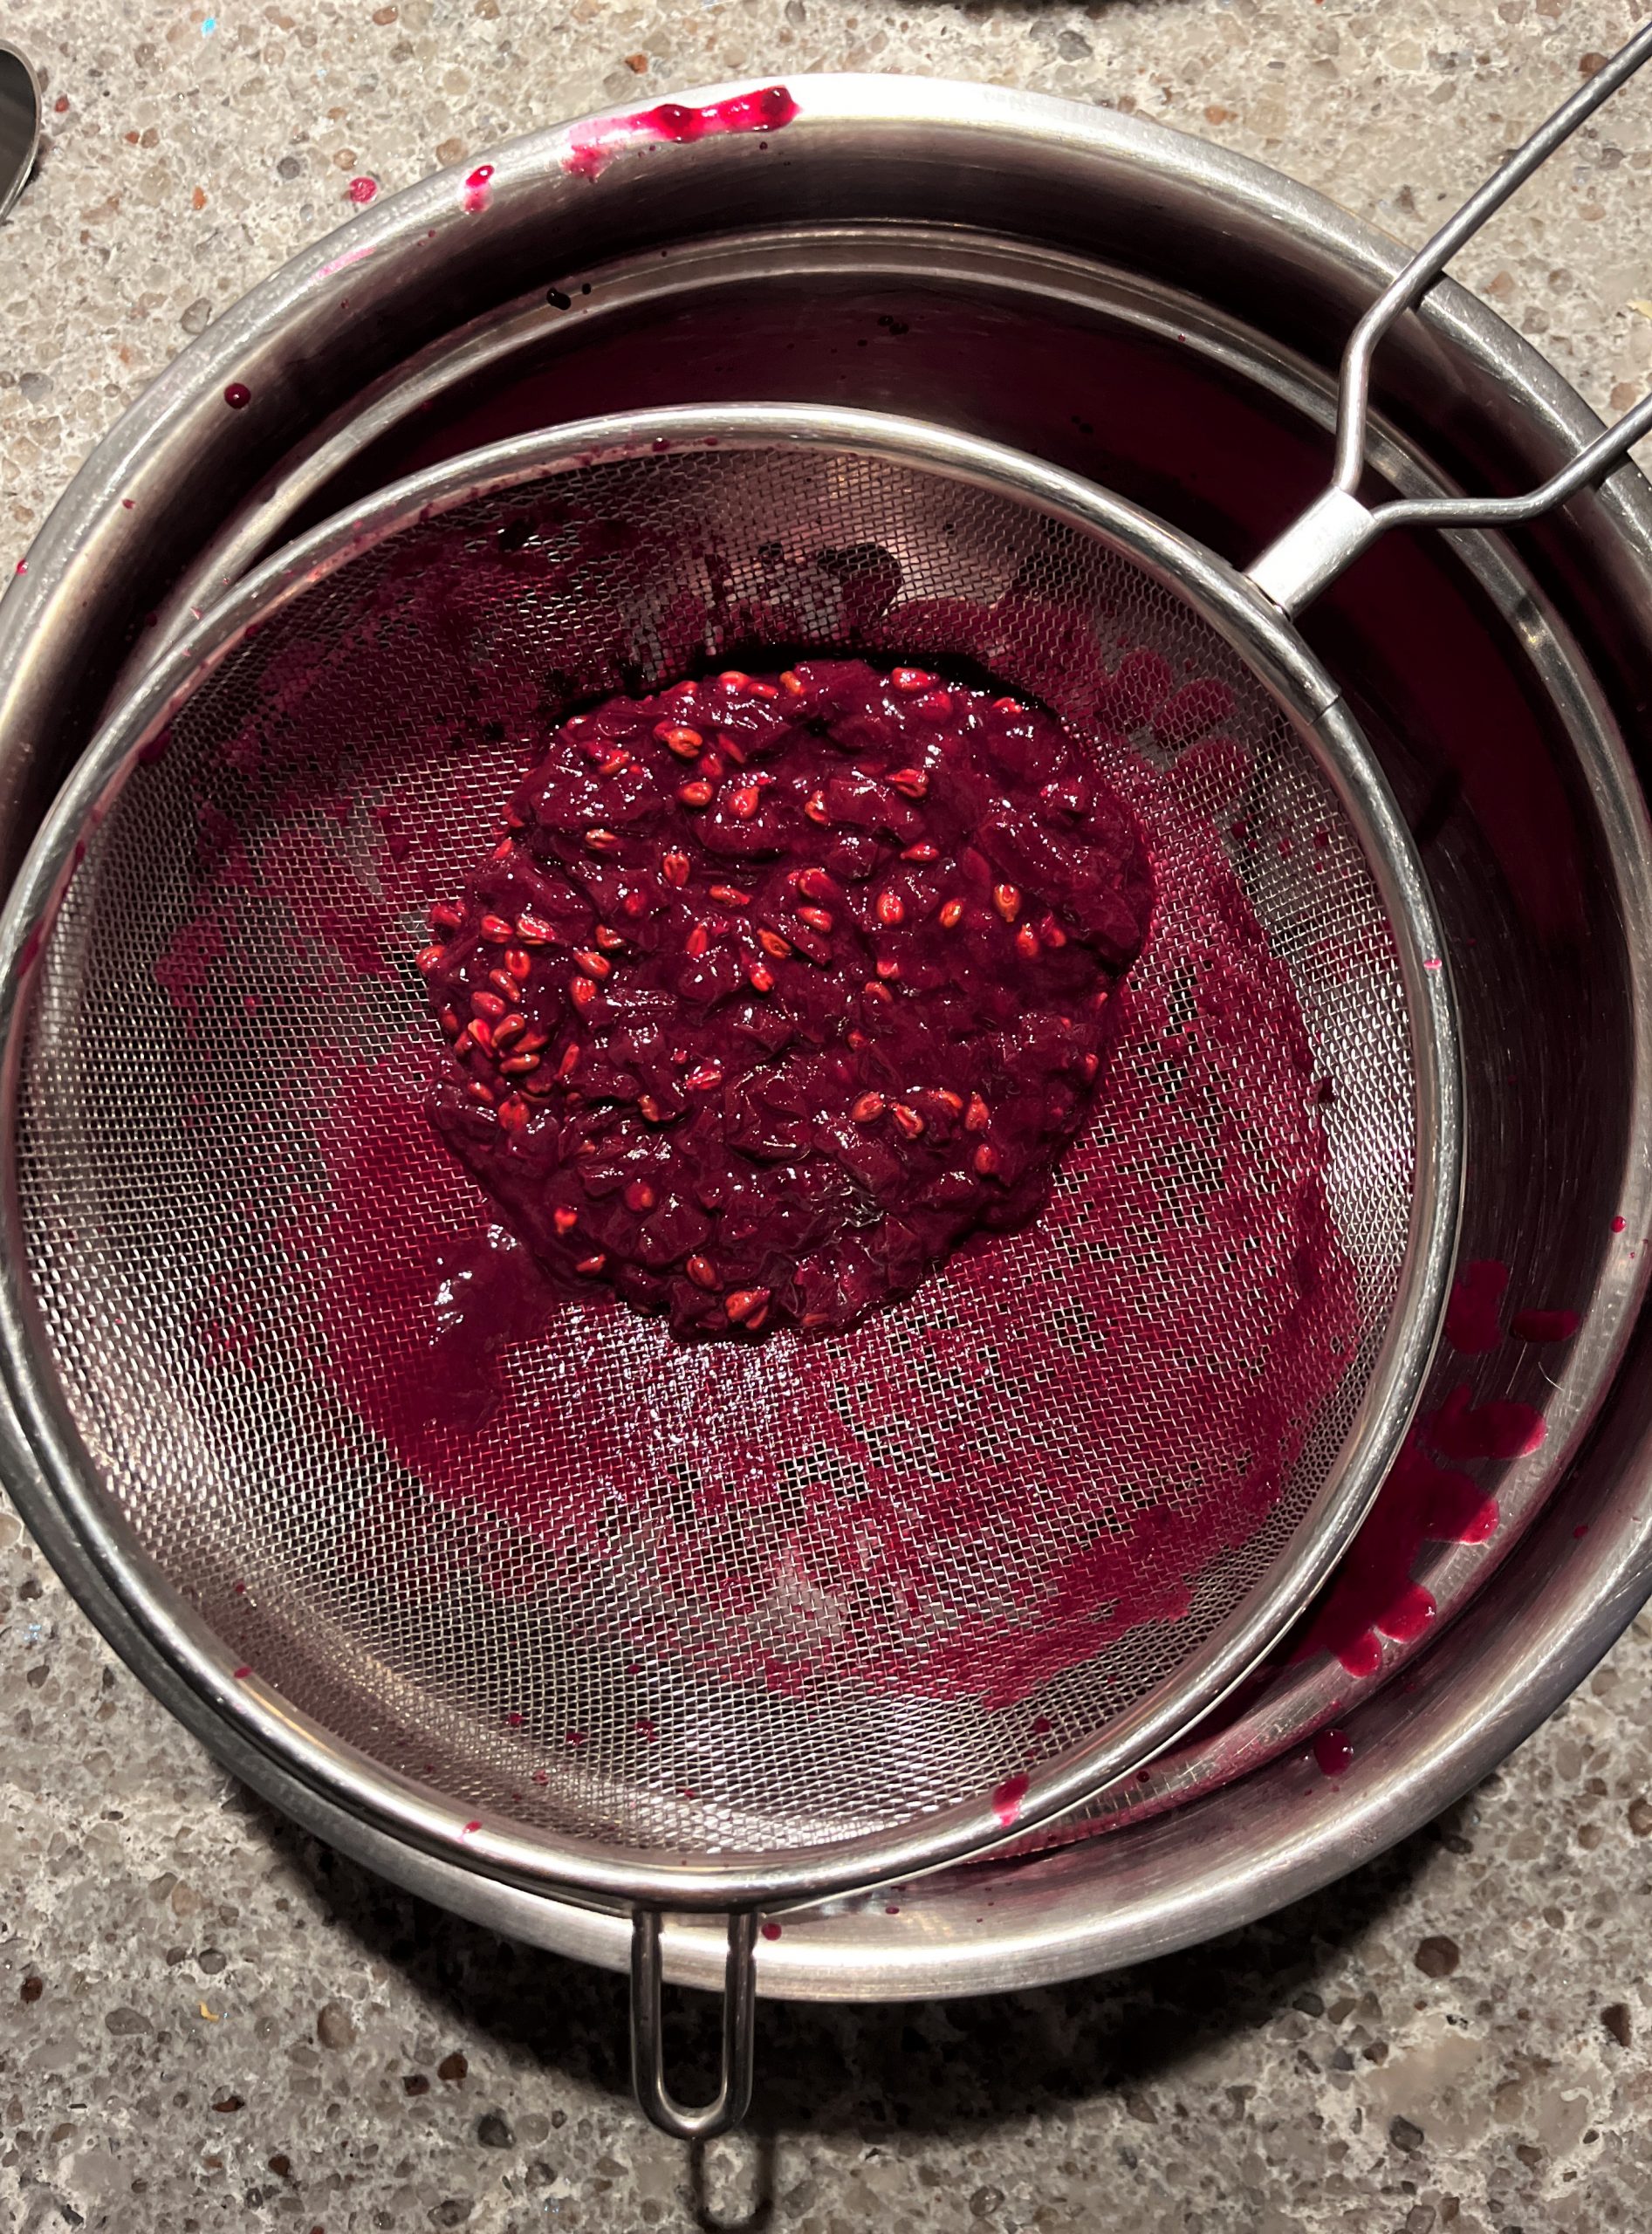 Concord Grapes Jam Recipe: strain the cooked grape jam through a mesh colander